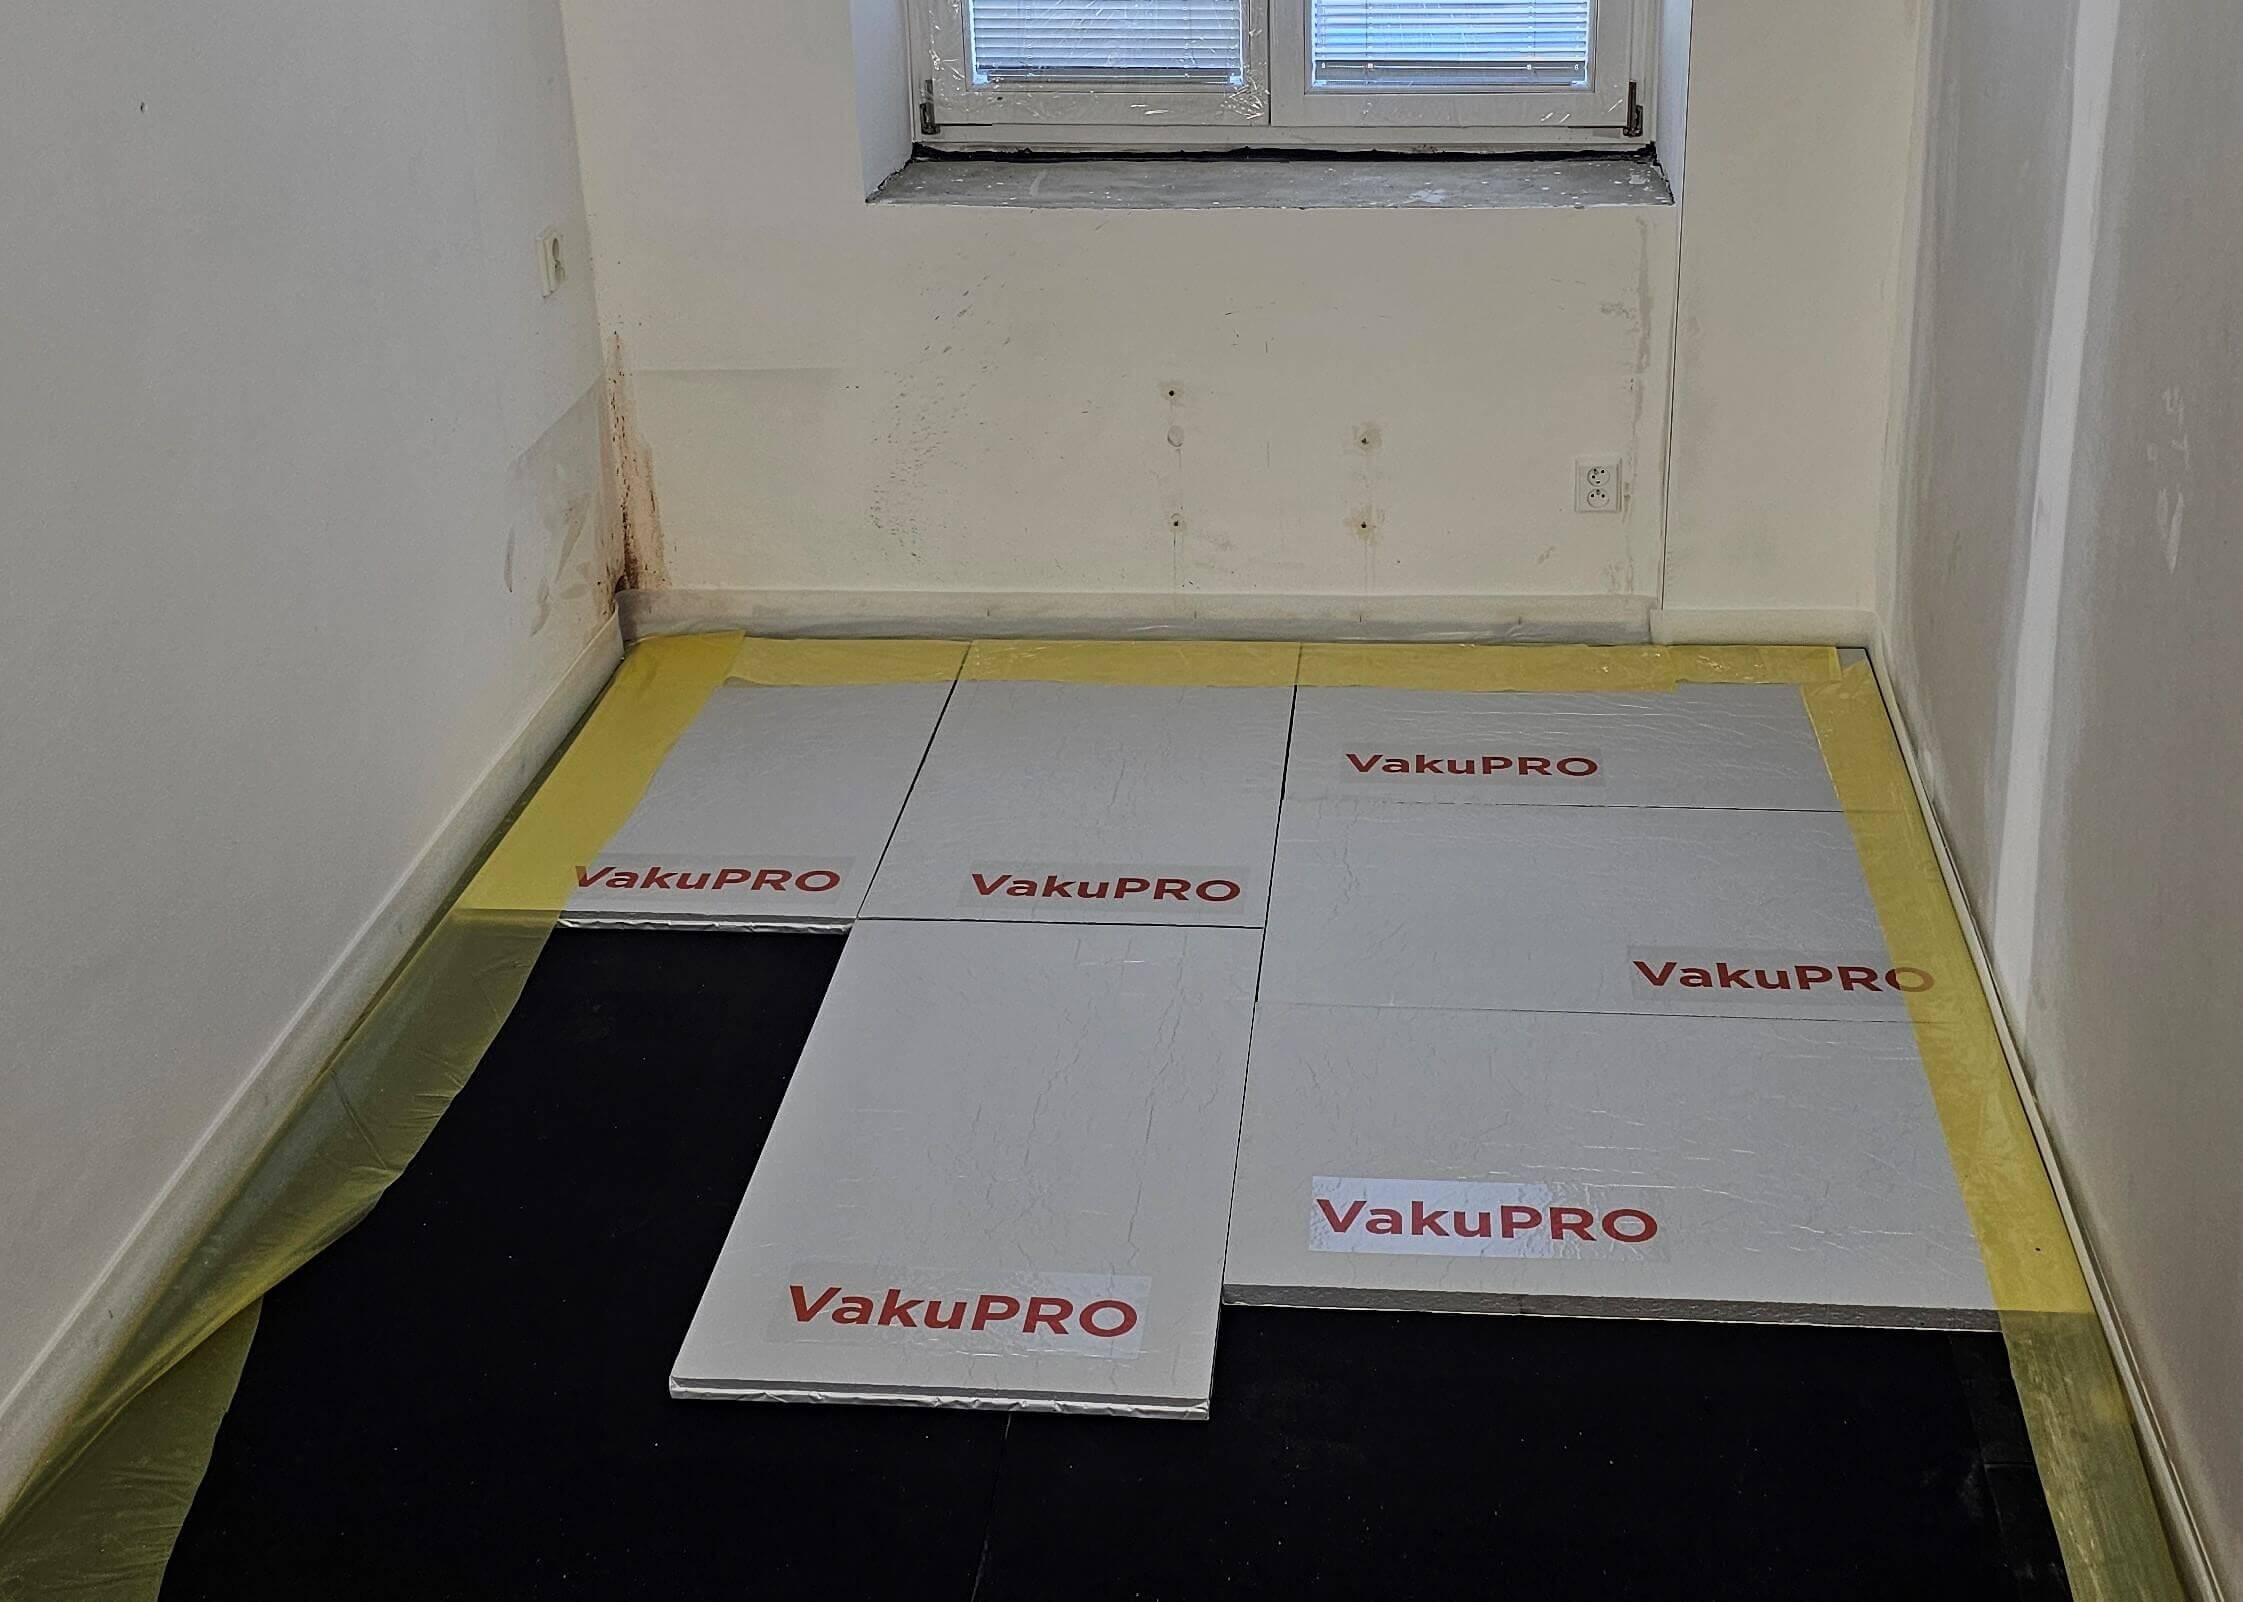 panely tepelné izolace VakuPRO položené na podlaze v pokoji